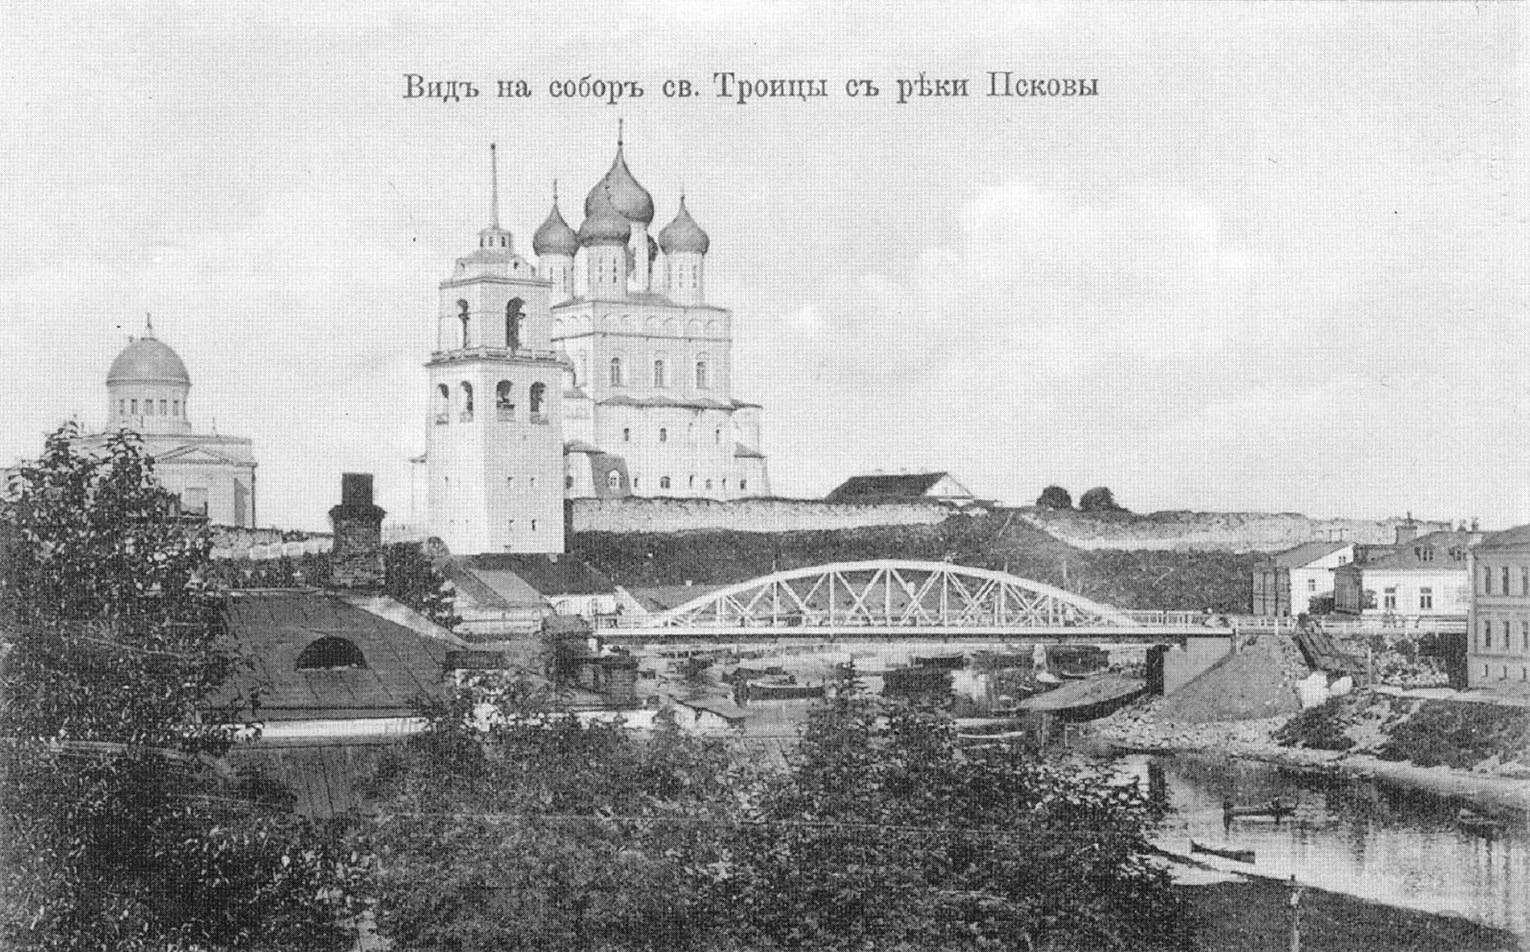 Псков. Вид на собор святой Троицы и реки Псковы.